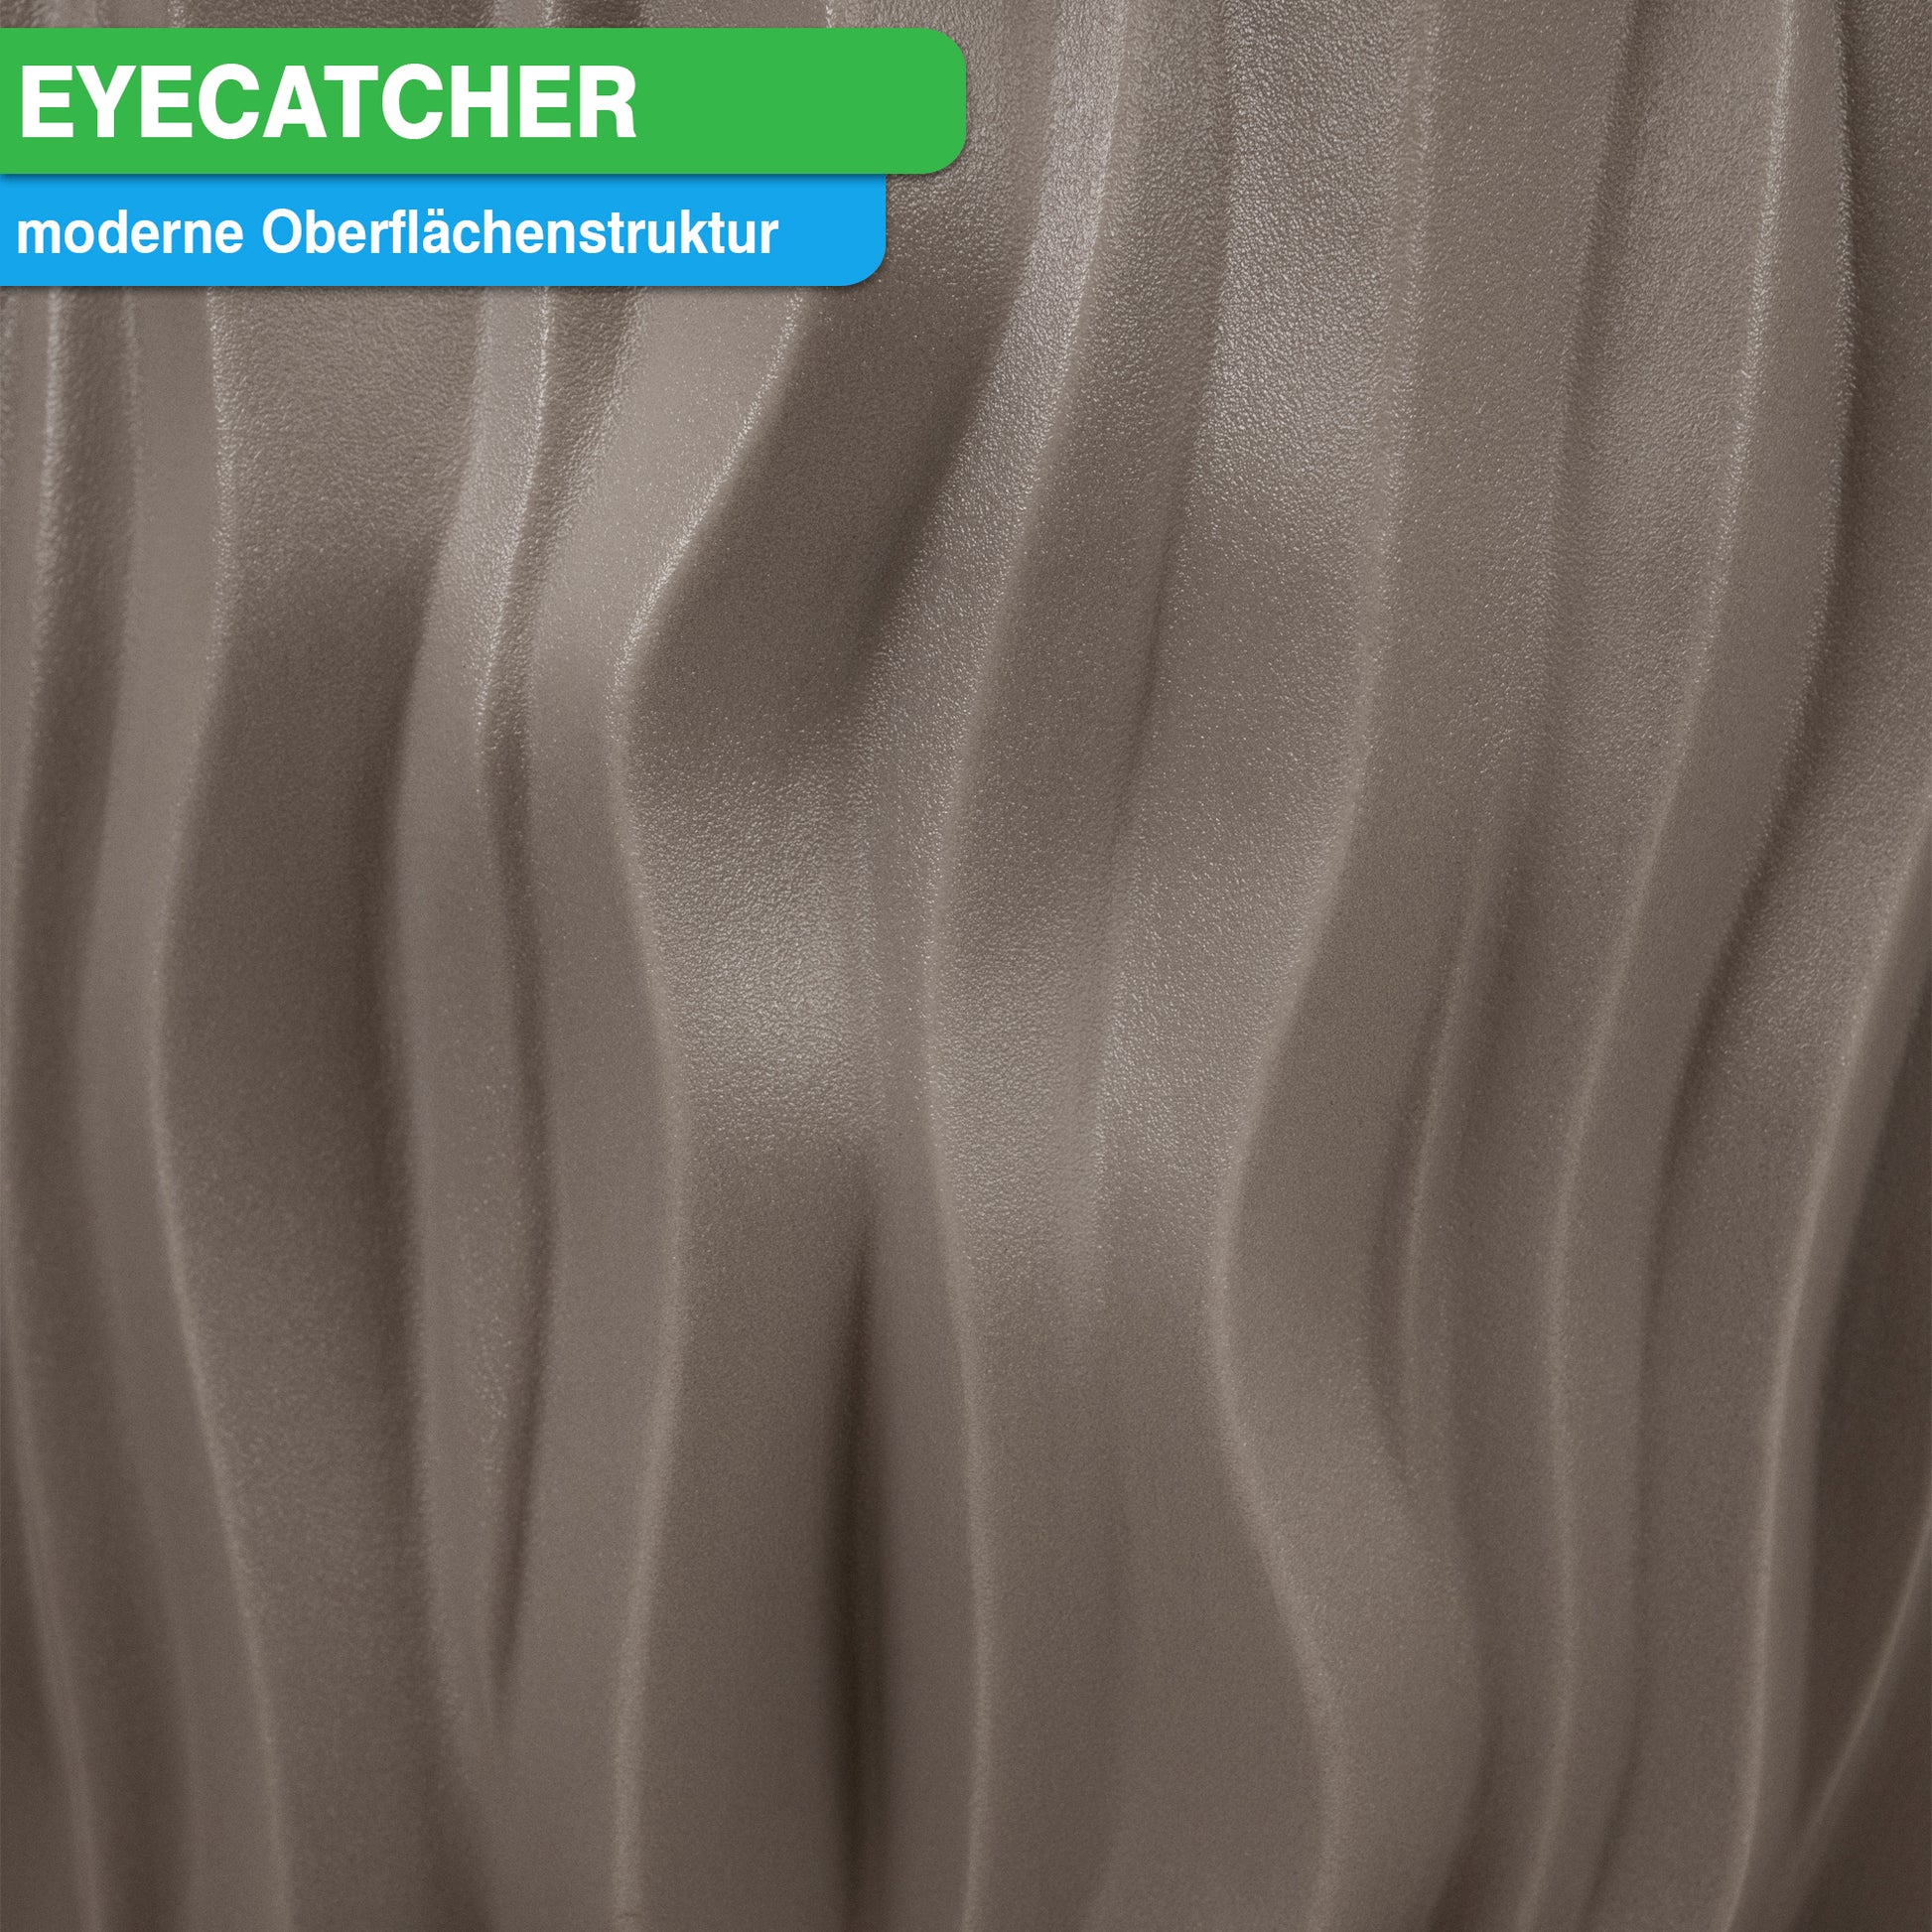 Gefaltetes Metallgewebe mit moderner Oberflächenstruktur, beschrieben als „Eyecatcher“ für das YourCasa Regentonne 160 Liter [AquaDesign Flower]-Design.